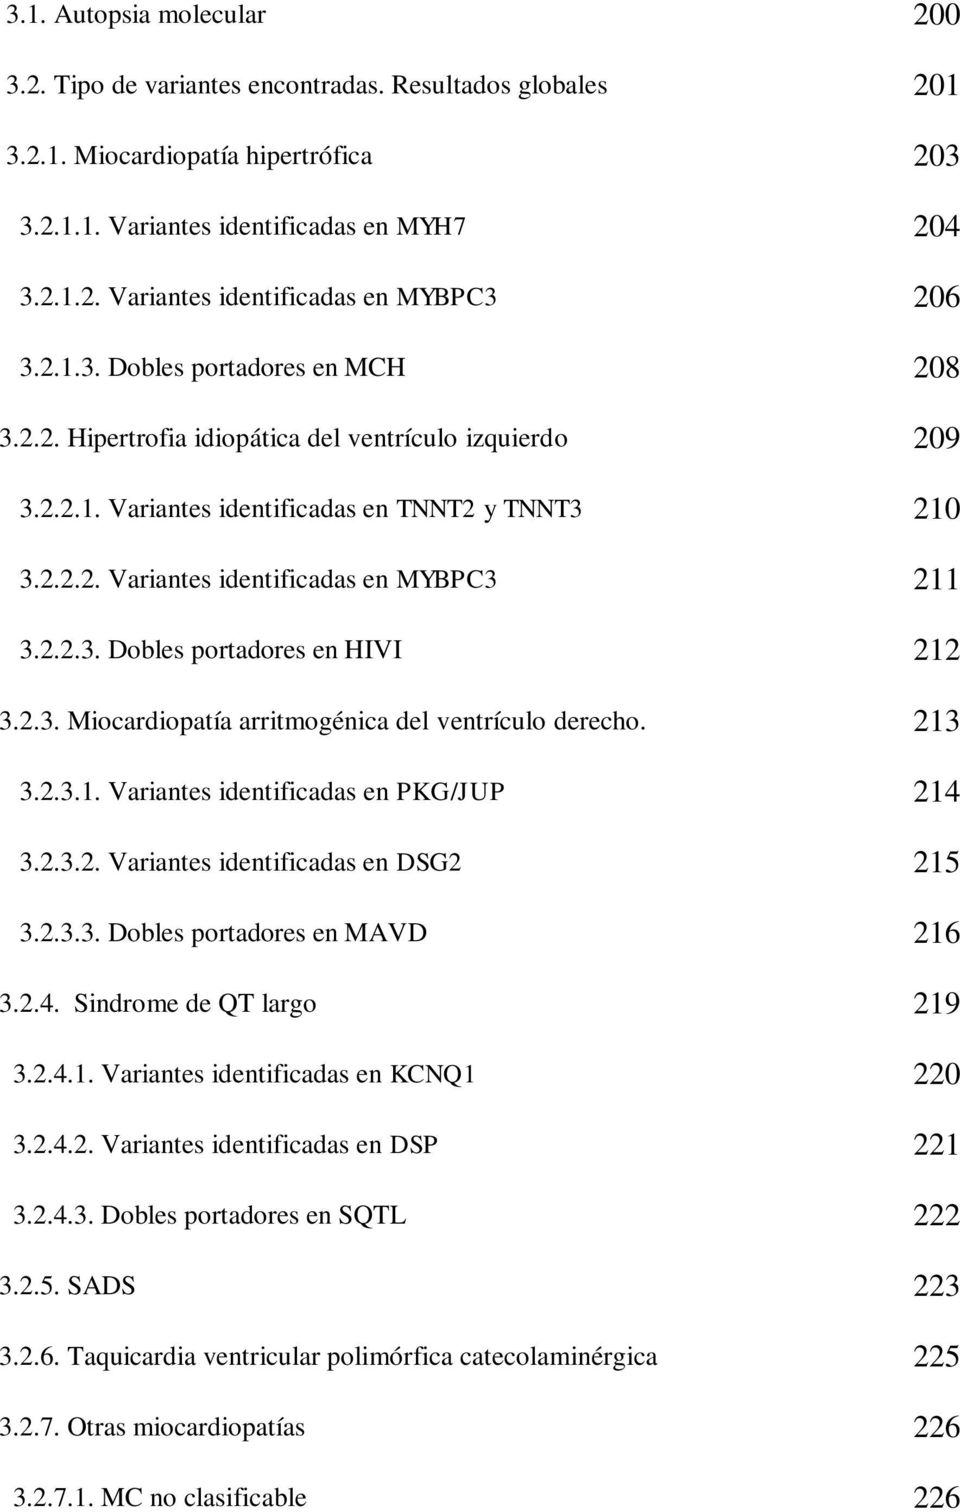 2.3. Miocardiopatía arritmogénica del ventrículo derecho. 213 3.2.3.1. Variantes identificadas en PKG/JUP 214 3.2.3.2. Variantes identificadas en DSG2 215 3.2.3.3. Dobles portadores en MAVD 216 3.2.4. Sindrome de QT largo 219 3.